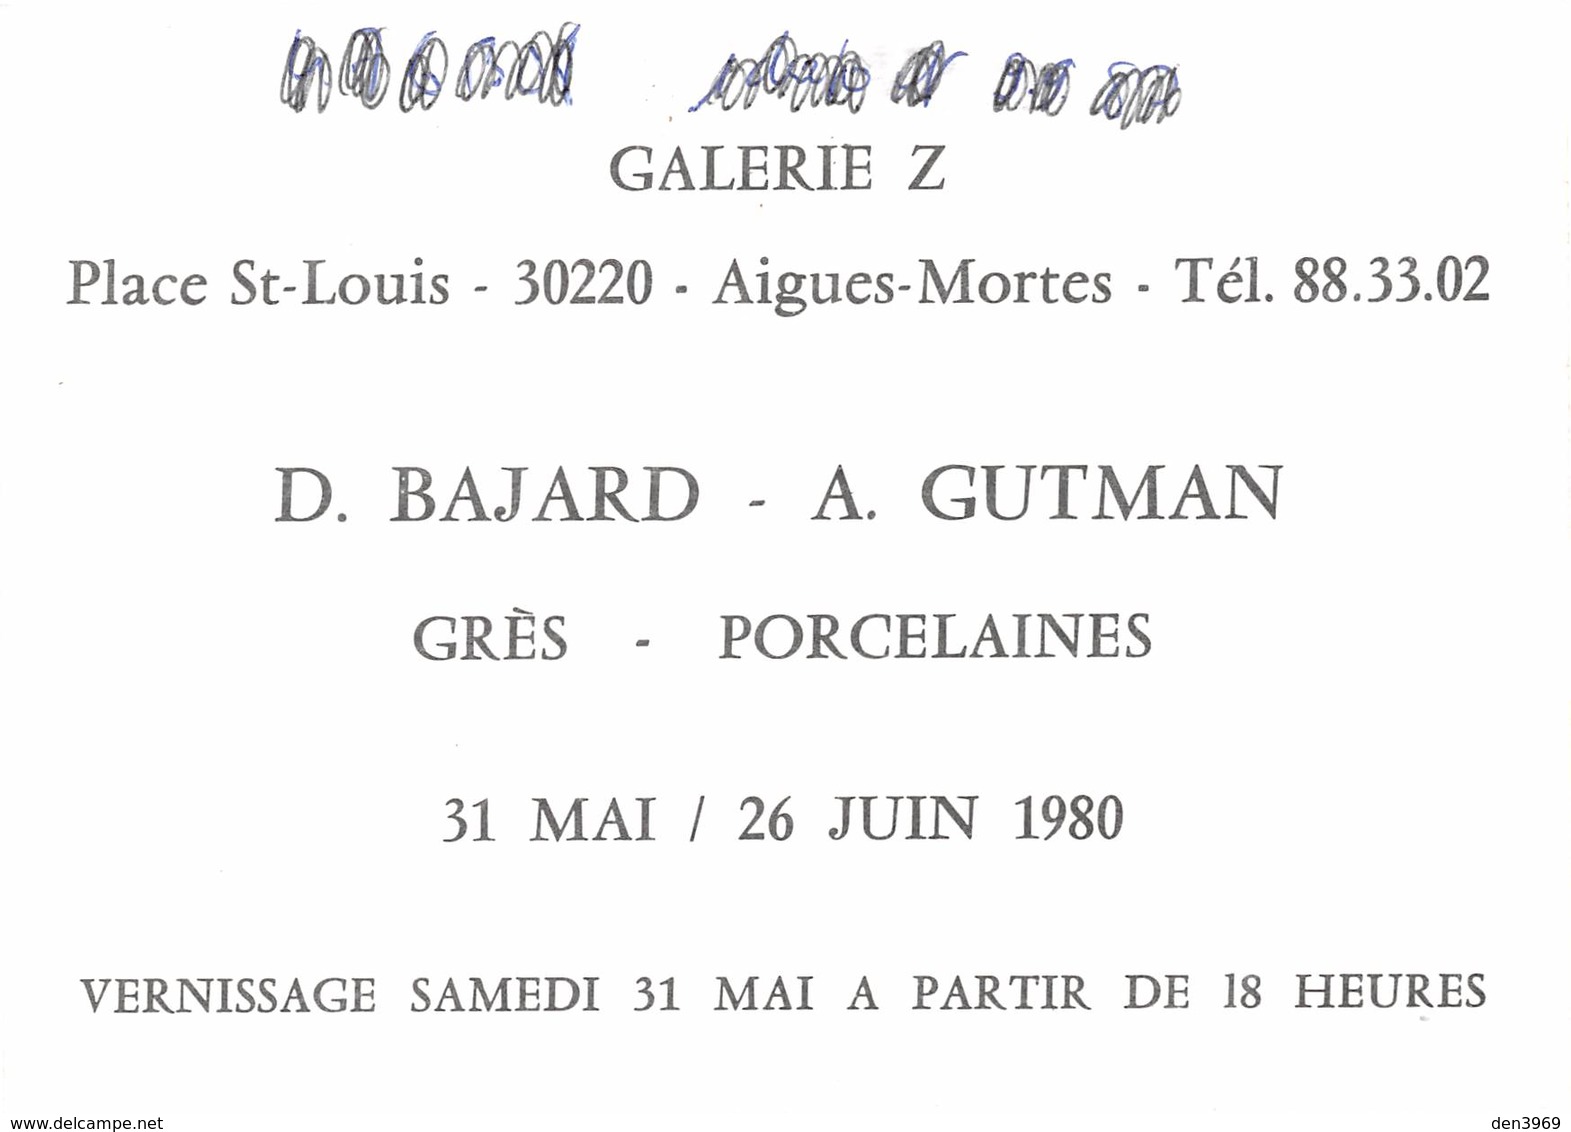 Aigues-Mortes - Galerie Z, Place Saint-Louis - D. Bajard - A. Gutman - Grès - Porcelaines - Aigues-Mortes